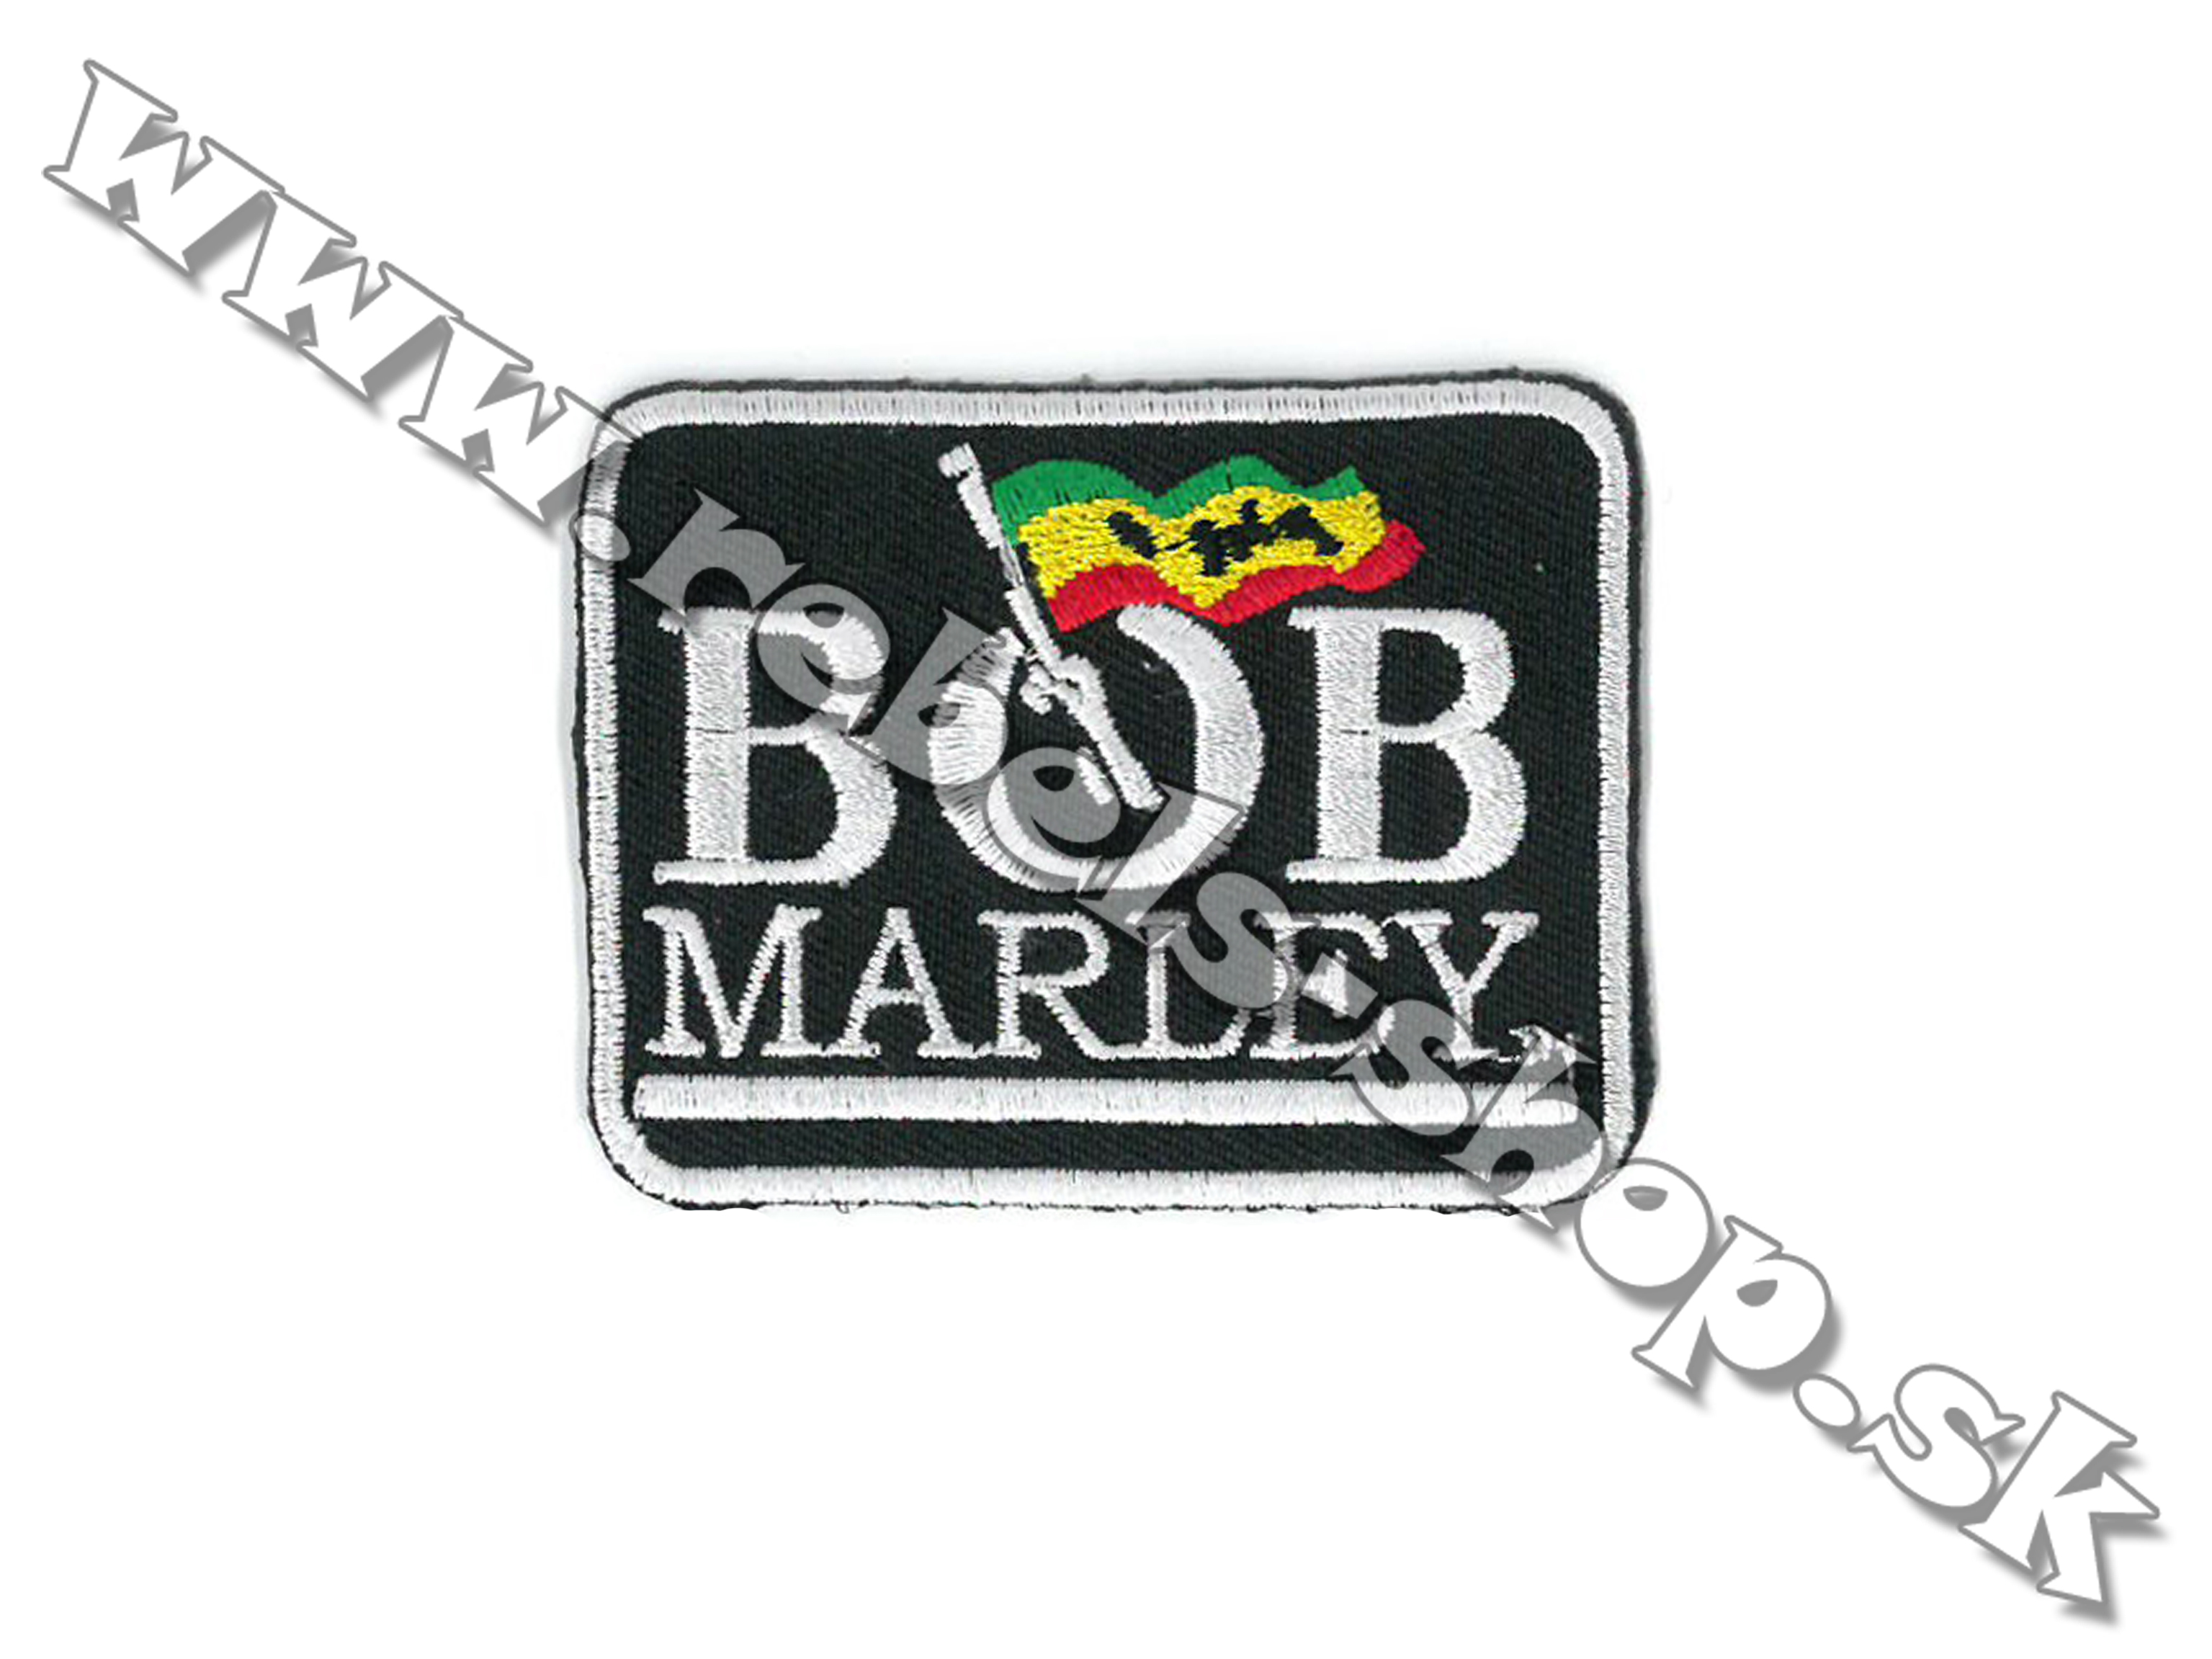 Nášivka "Bob Marley"